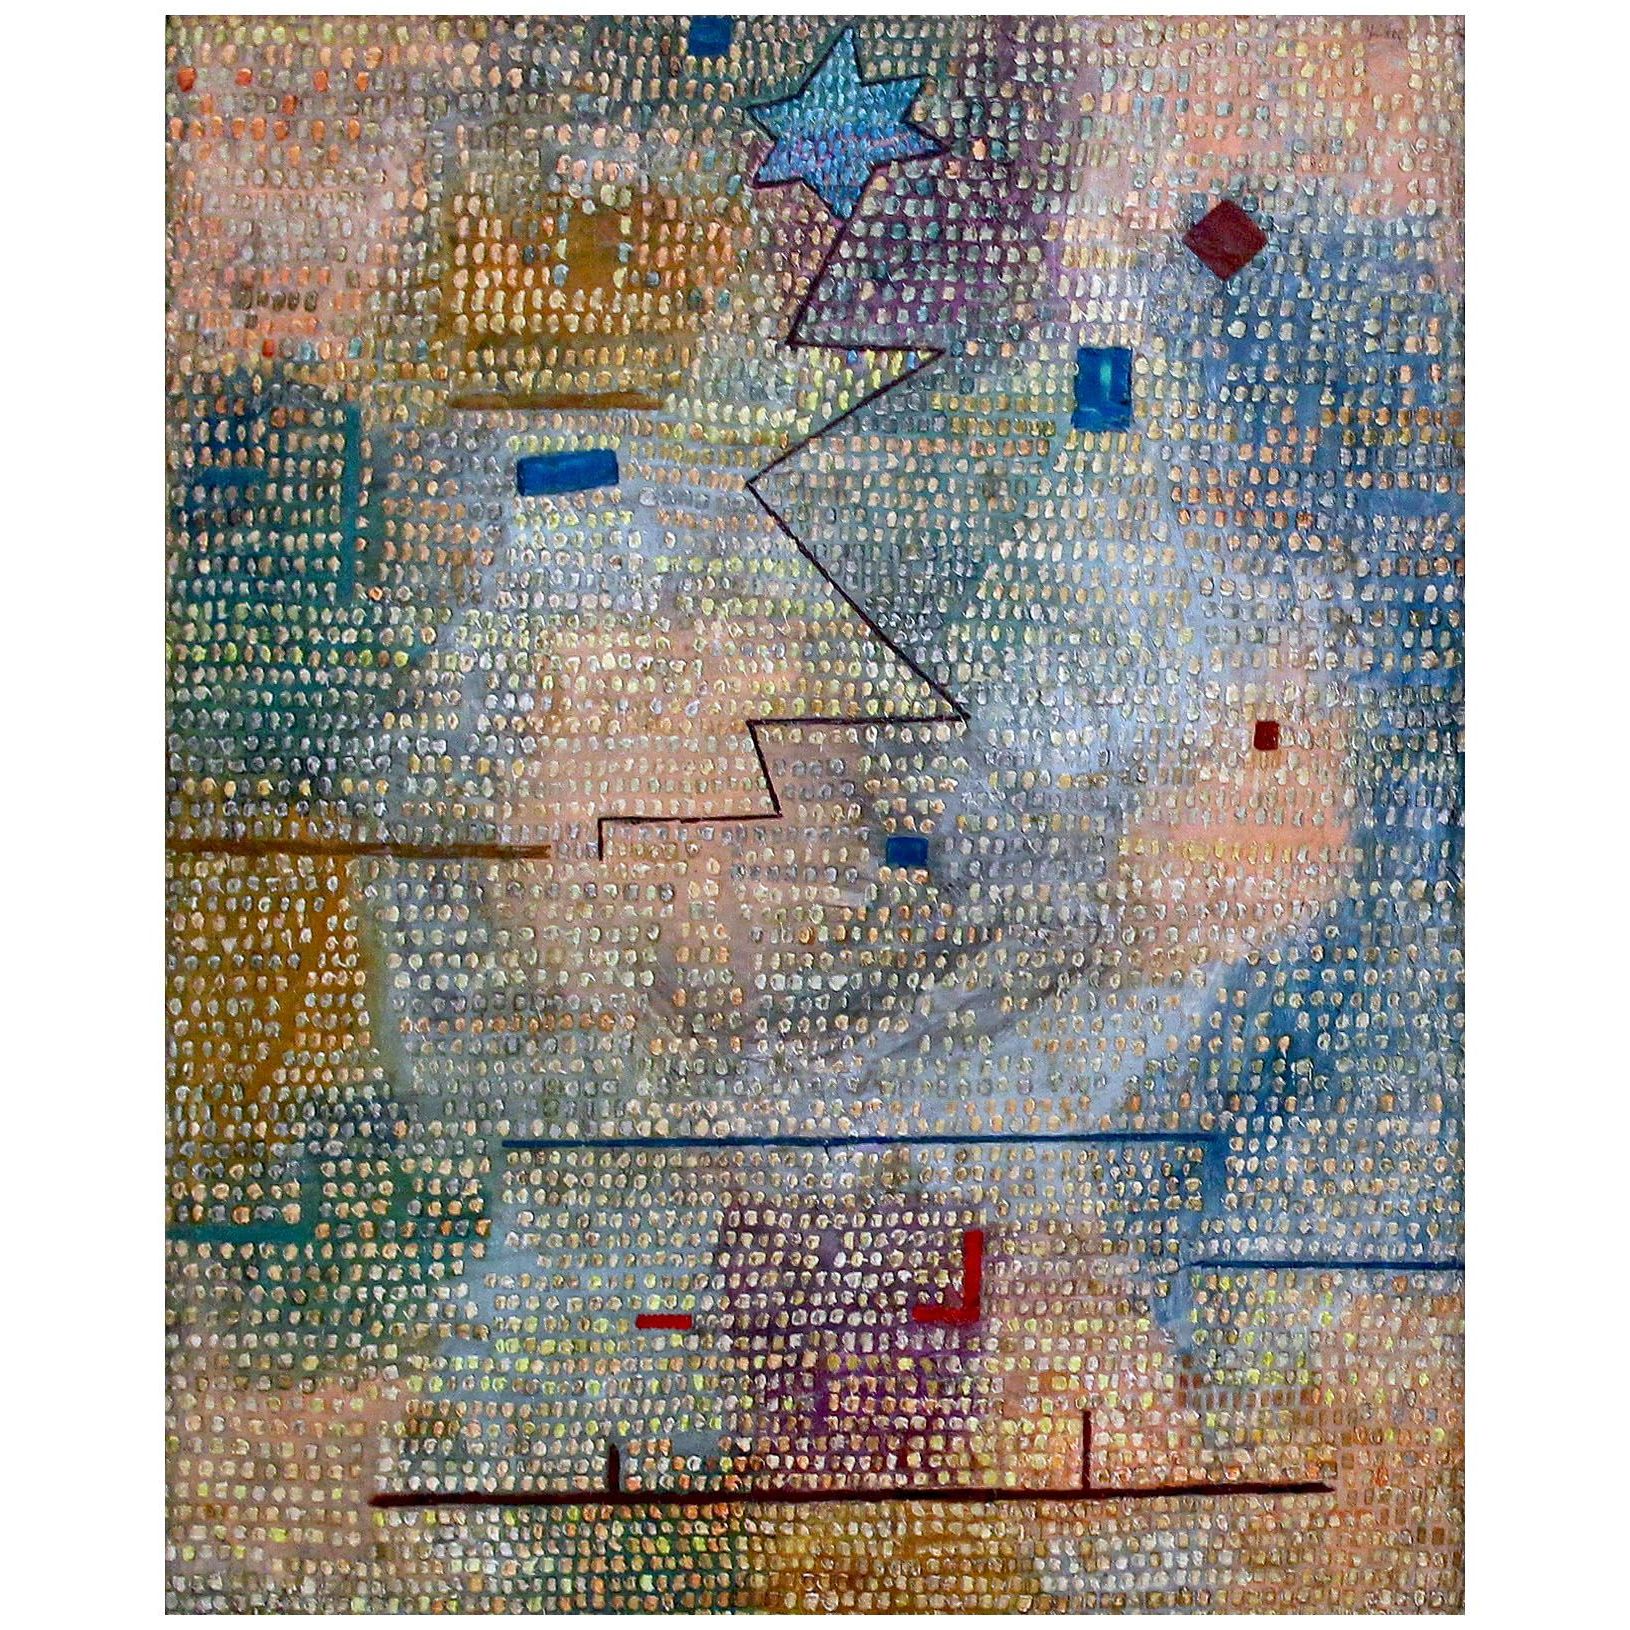 Paul Klee. Aufgehender Stern. 1931. Fondation Beyeler, Basel